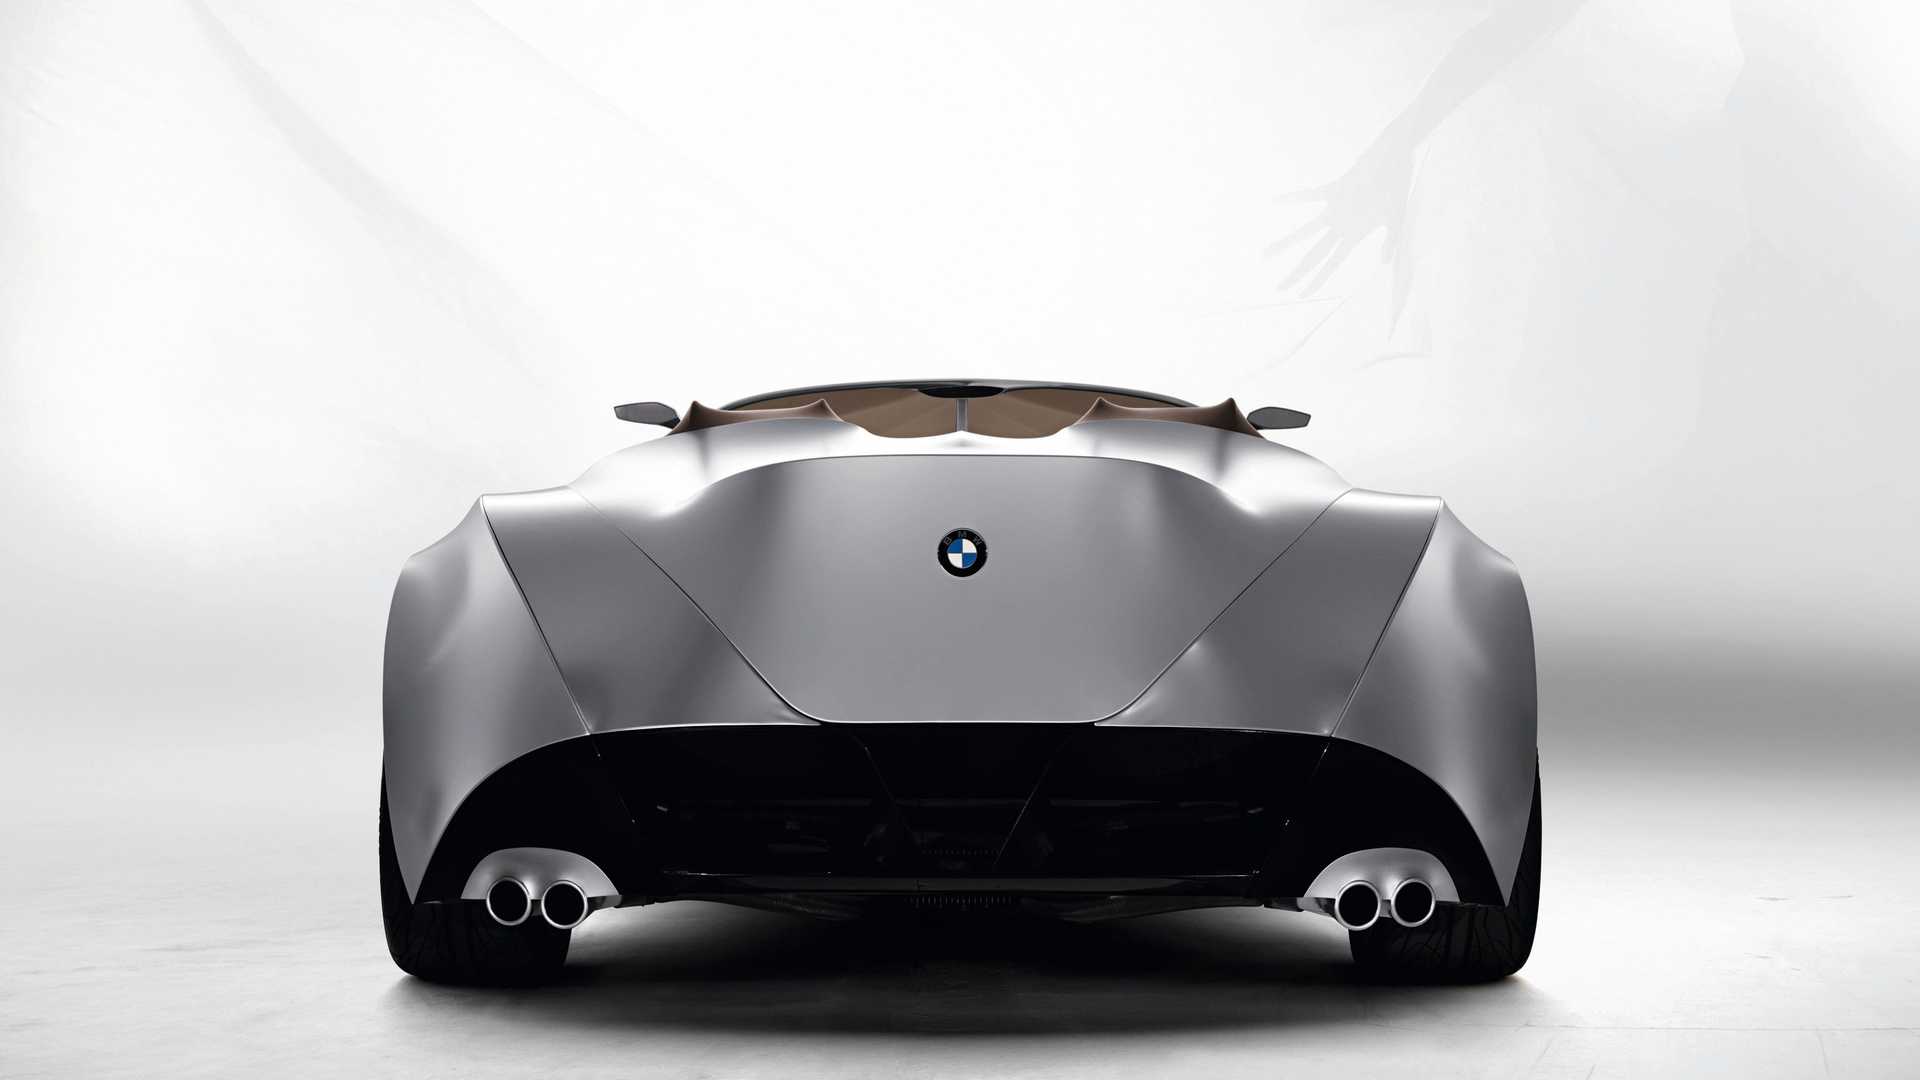 نمای عقب خودروی مفهومی روباز بی ام و گینا / BMW GINA concept convertible